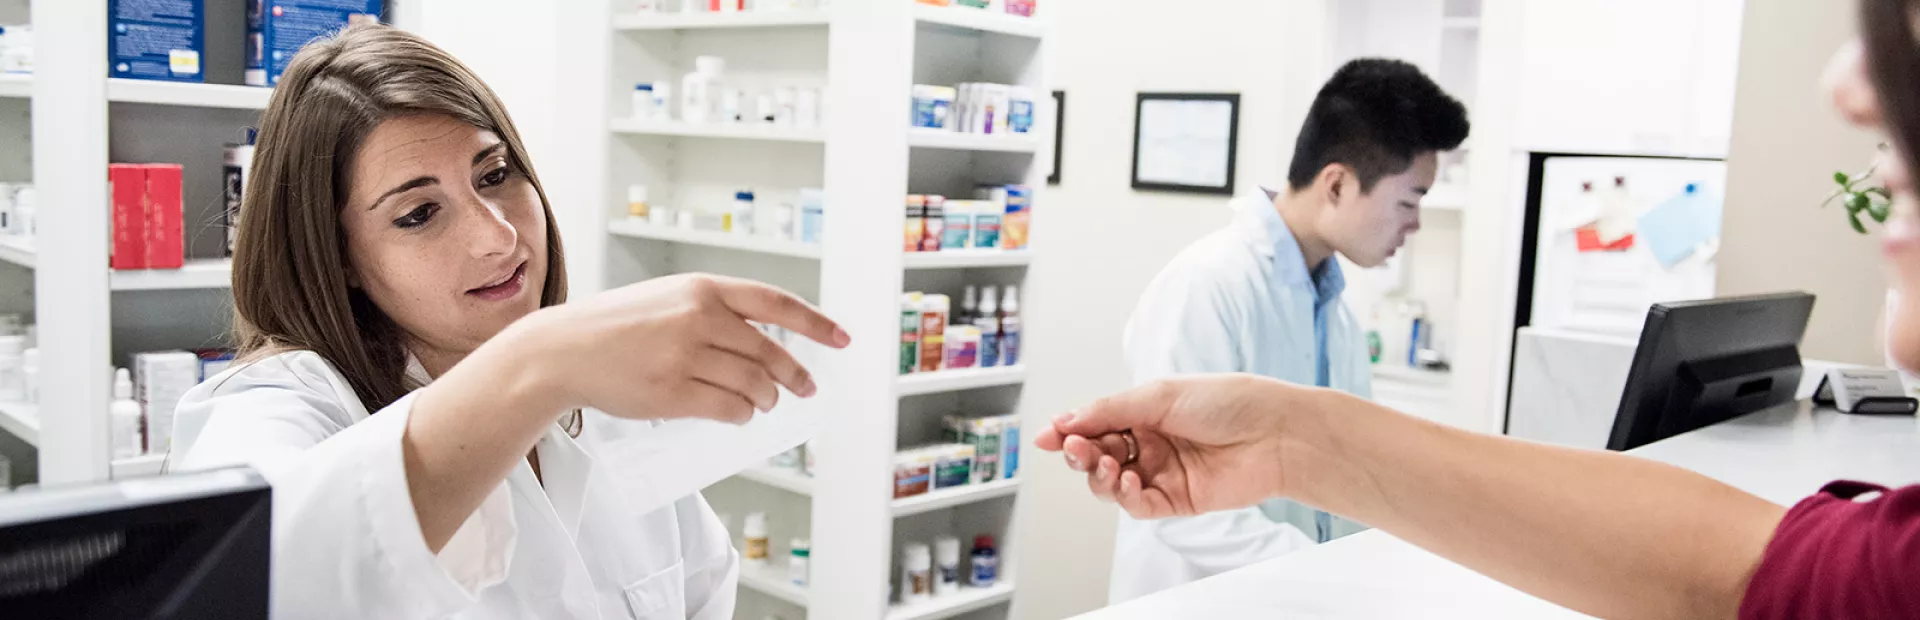 Pharmacist reading customer's prescription